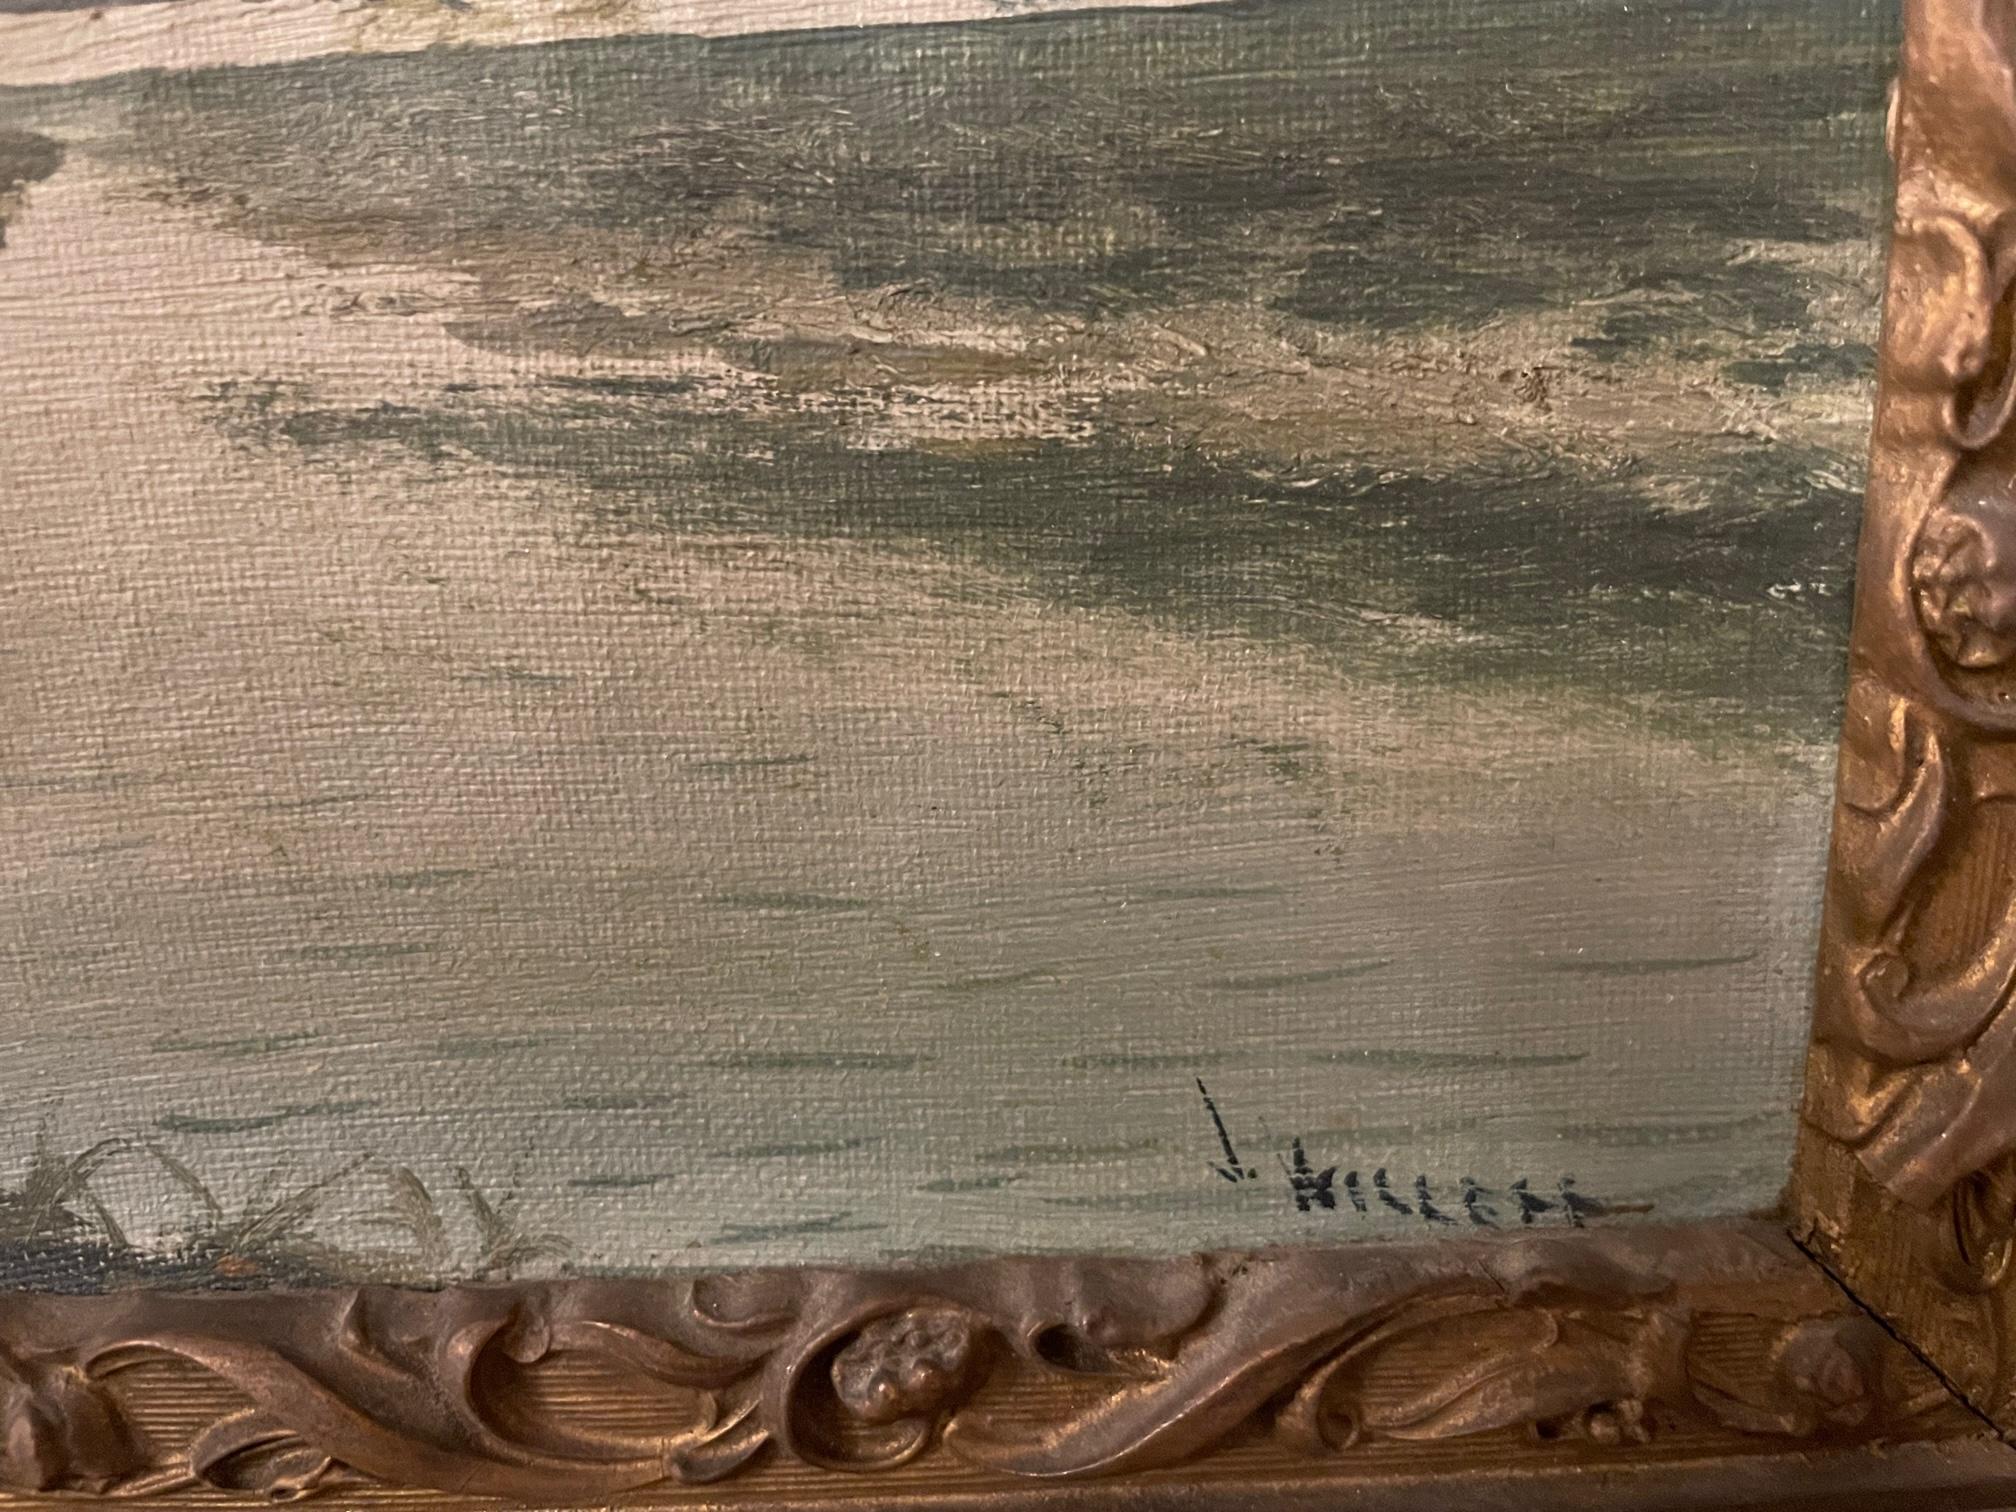  Charmante peinture à l'huile sur toile du 19ème siècle/20ème siècle dans un cadre en bois sculpté, signée A. Willett dans le coin inférieur droit. Arthur Willett (1868-1951) est connu pour ses paysages peints à l'aquarelle et à l'huile, souvent de